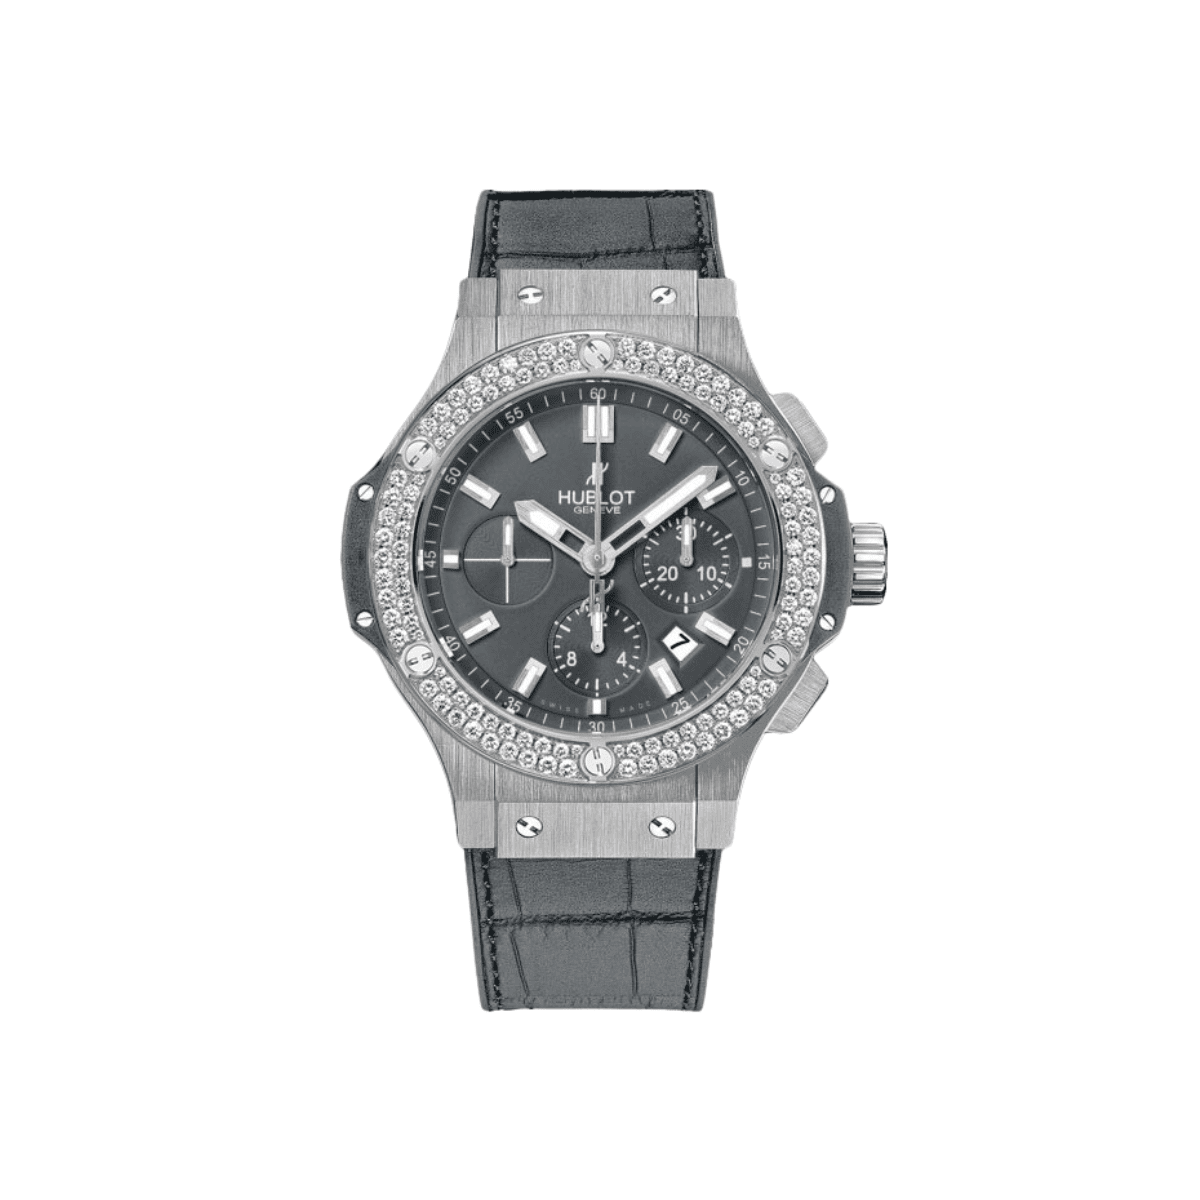 Big Bang 44 301.ST.5020.GR.1104 Grey Watches Hublot 